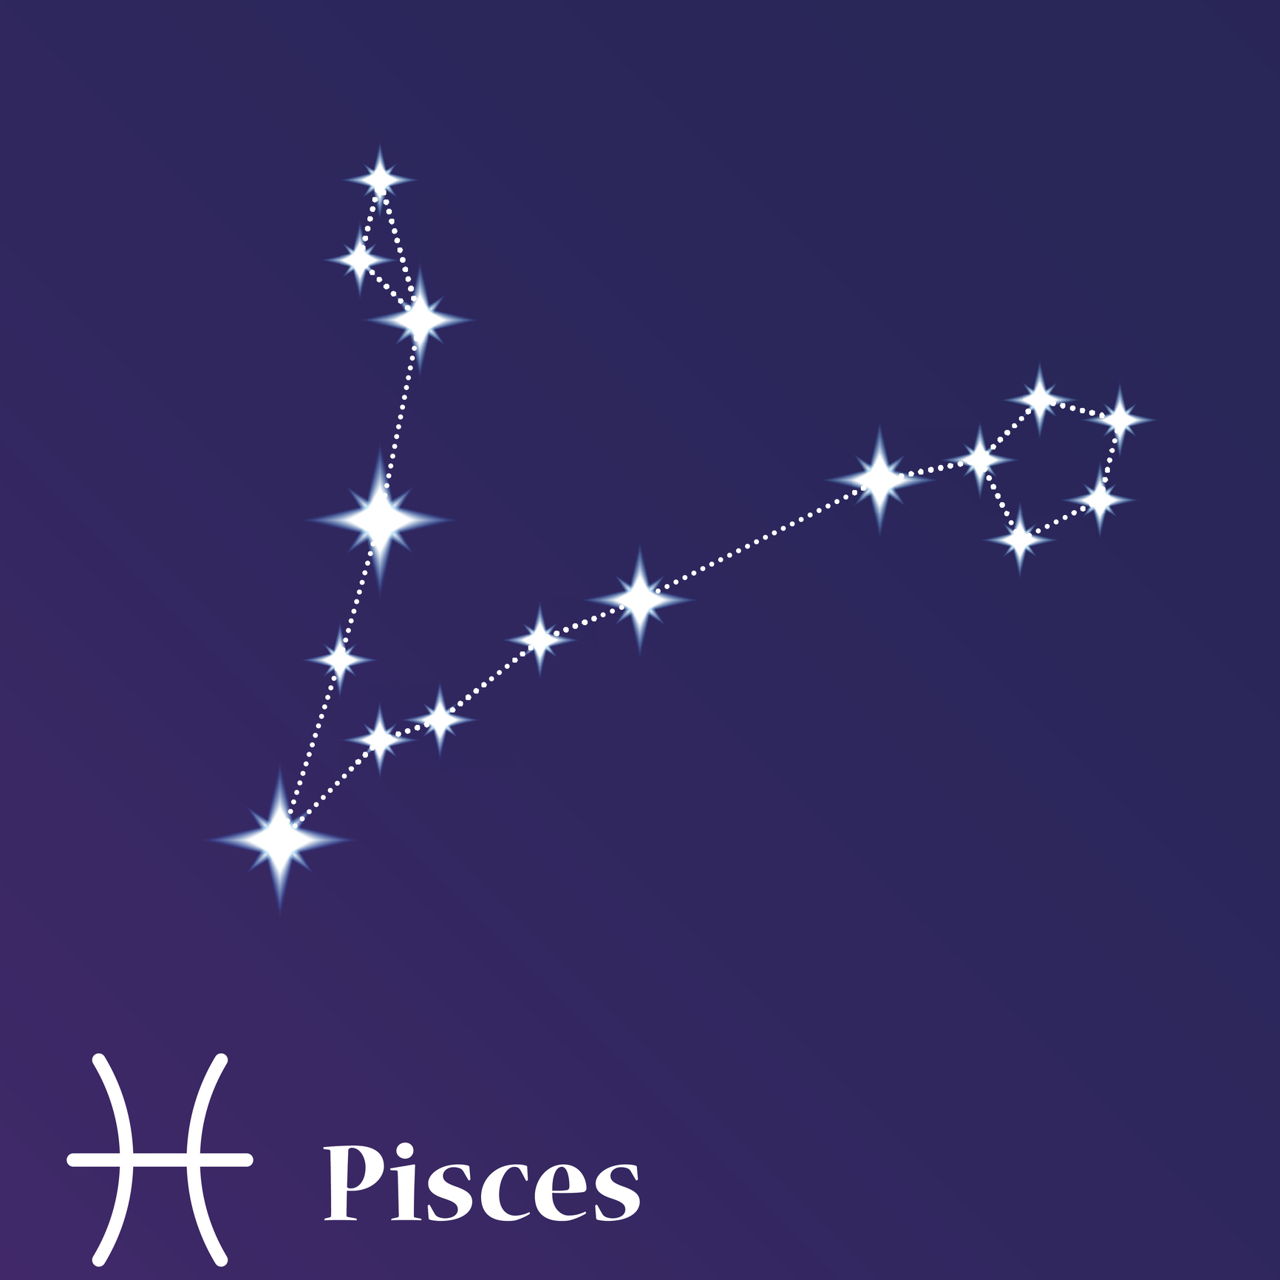 Сценарий созвездие. Астеризмы созвездия рыбы. Созвездие рыбы Pisces. Звезда Омикрон созвездия рыбы. Созвездие рыбы на Звездном небе.